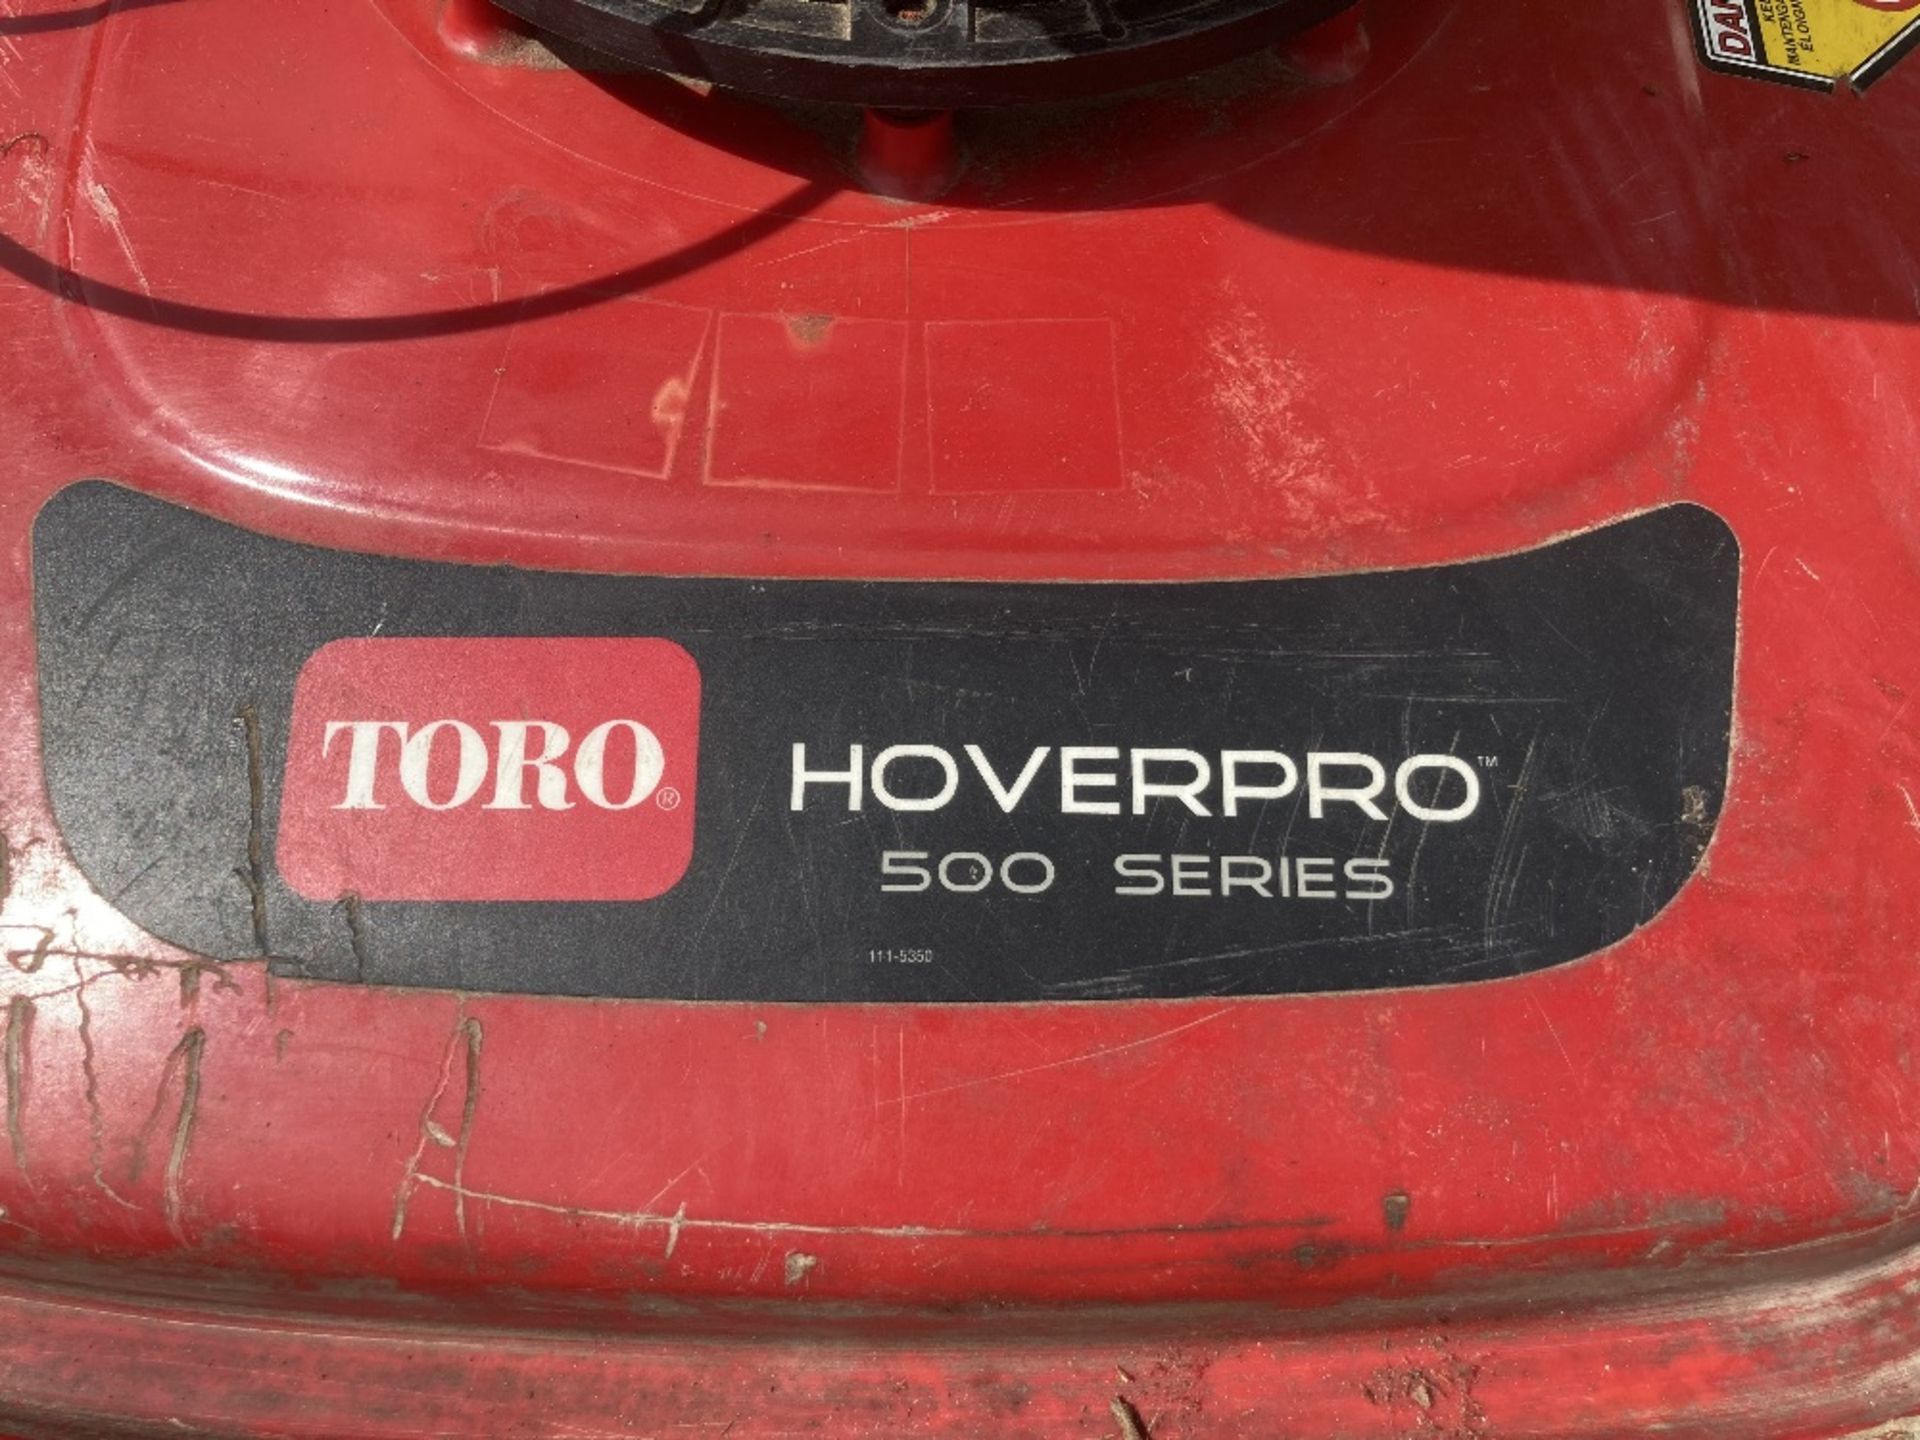 Toro HoverPro 500 Series Petrol Lawn Mower - Image 4 of 4